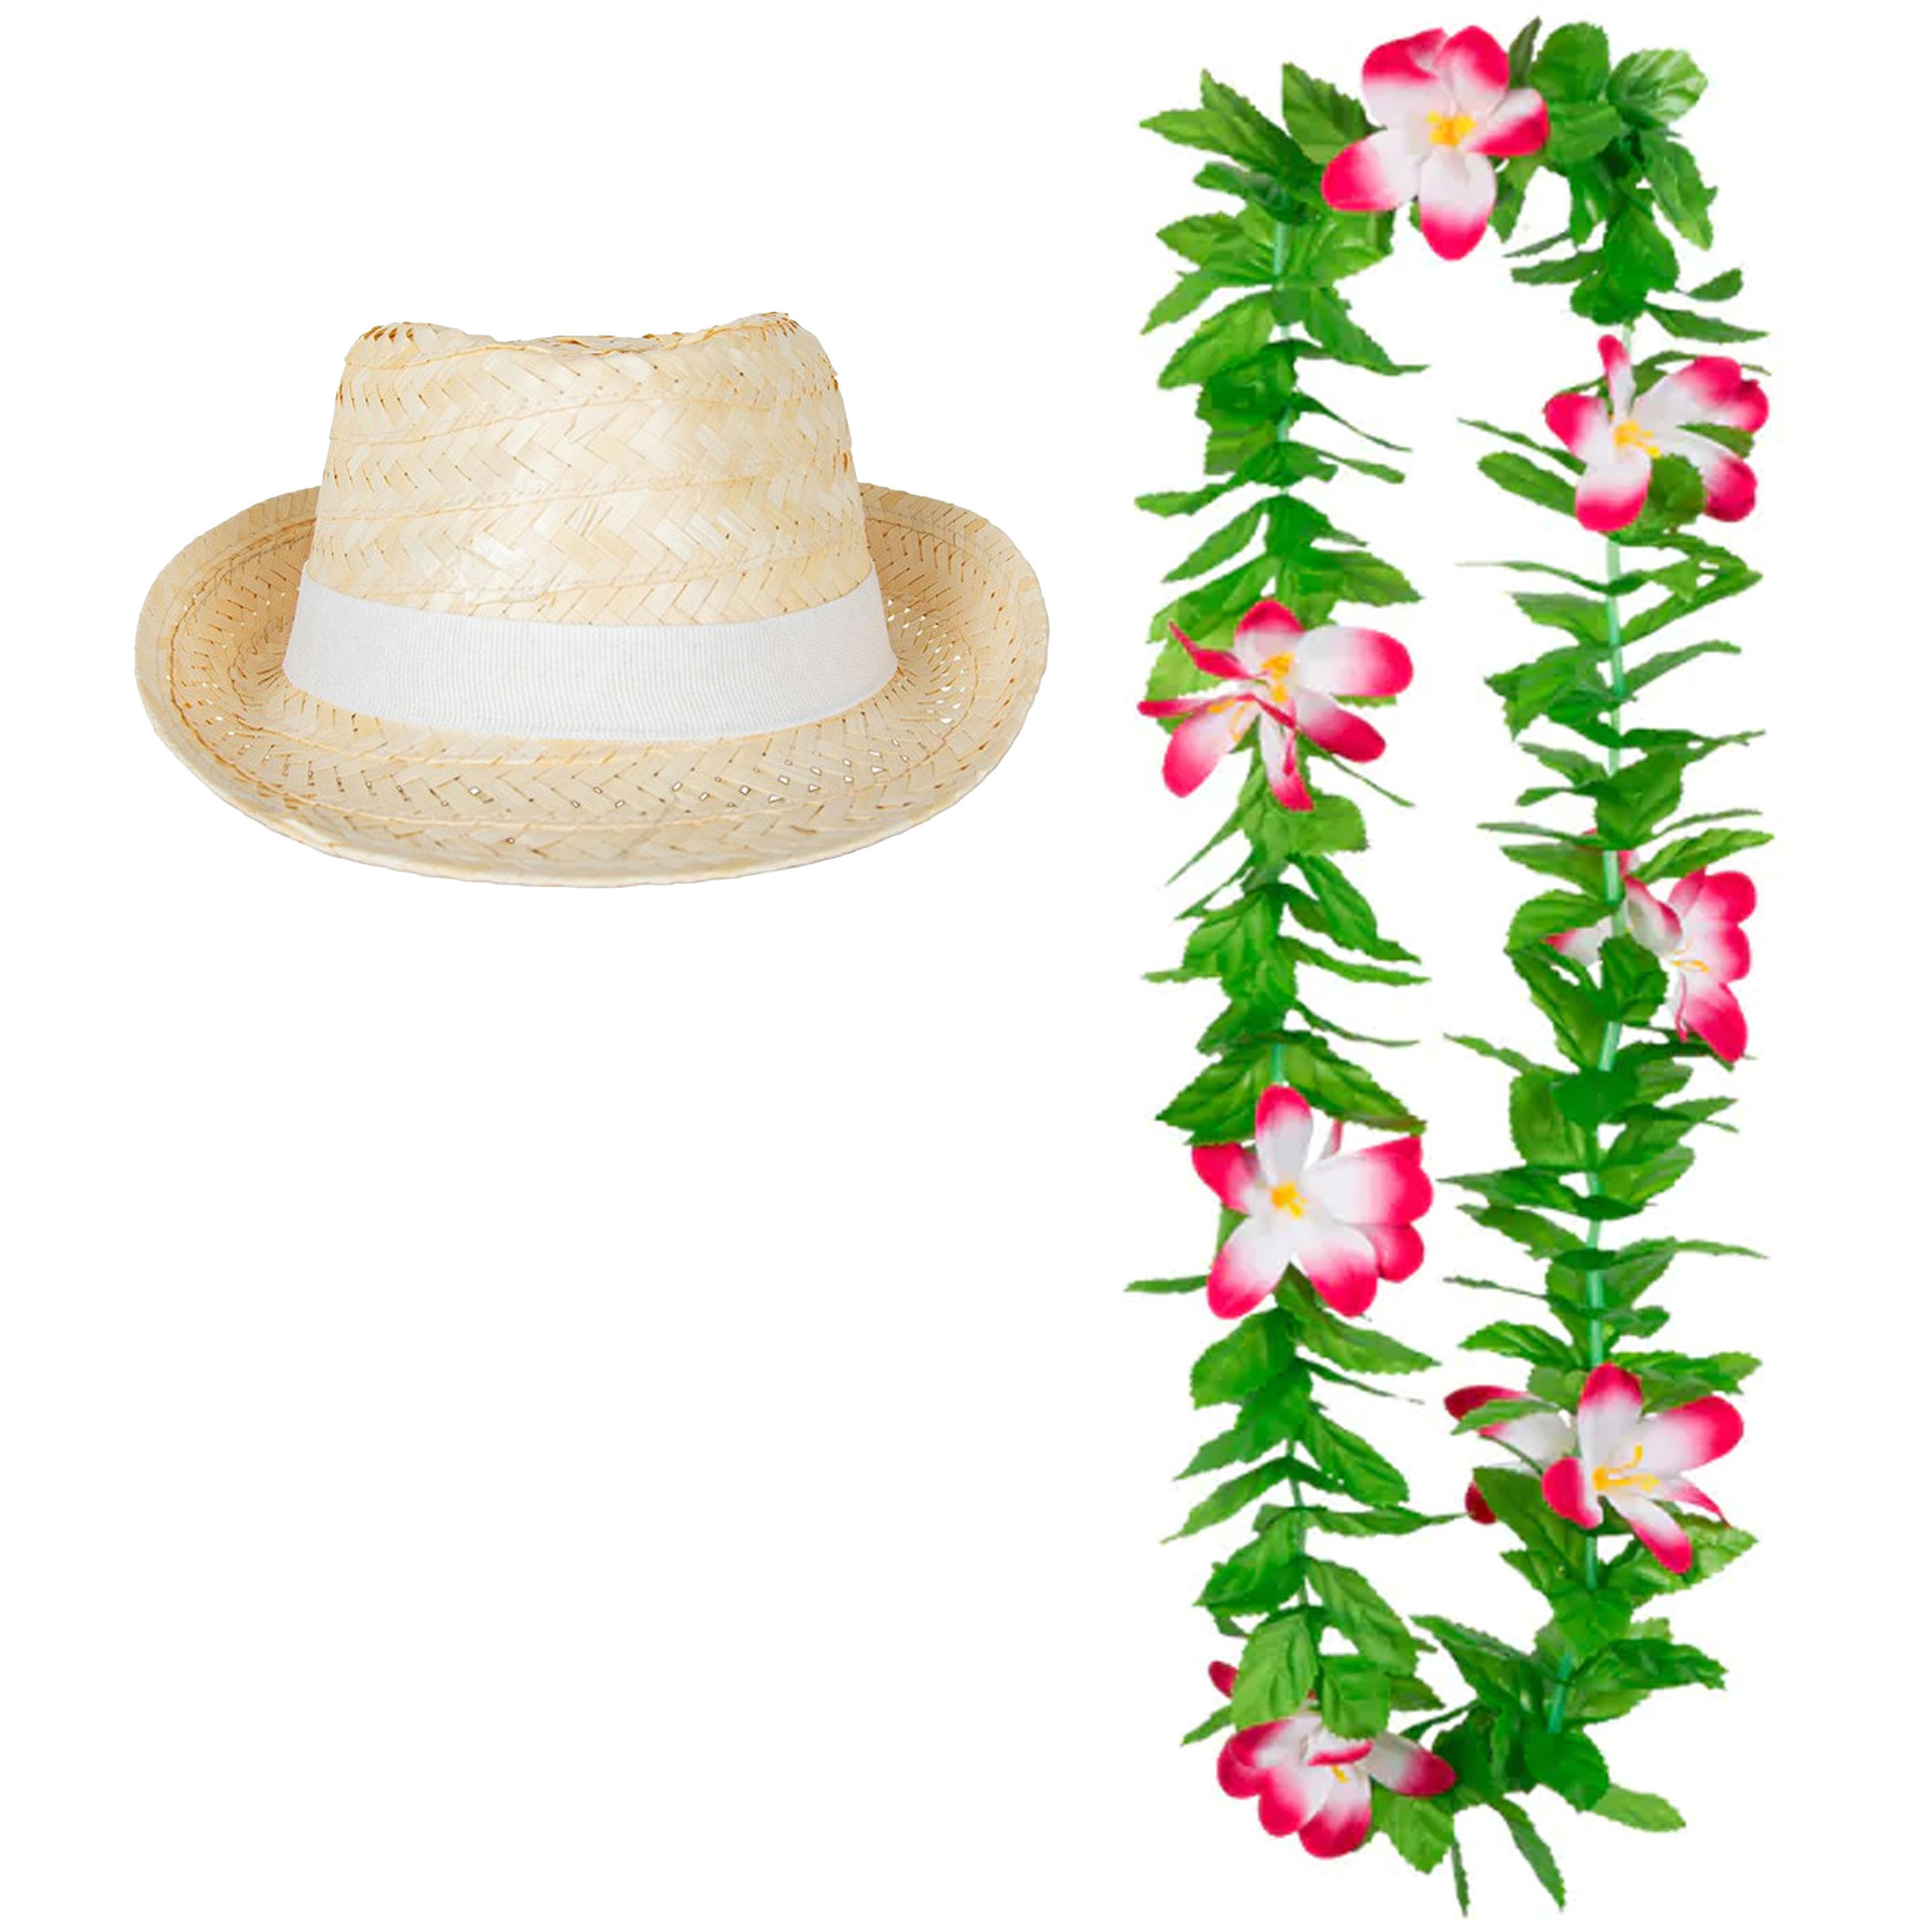 Carnaval verkleed set - Tropische Hawaii party - Ibiza strohoedje - en bloemenkrans groen/roze